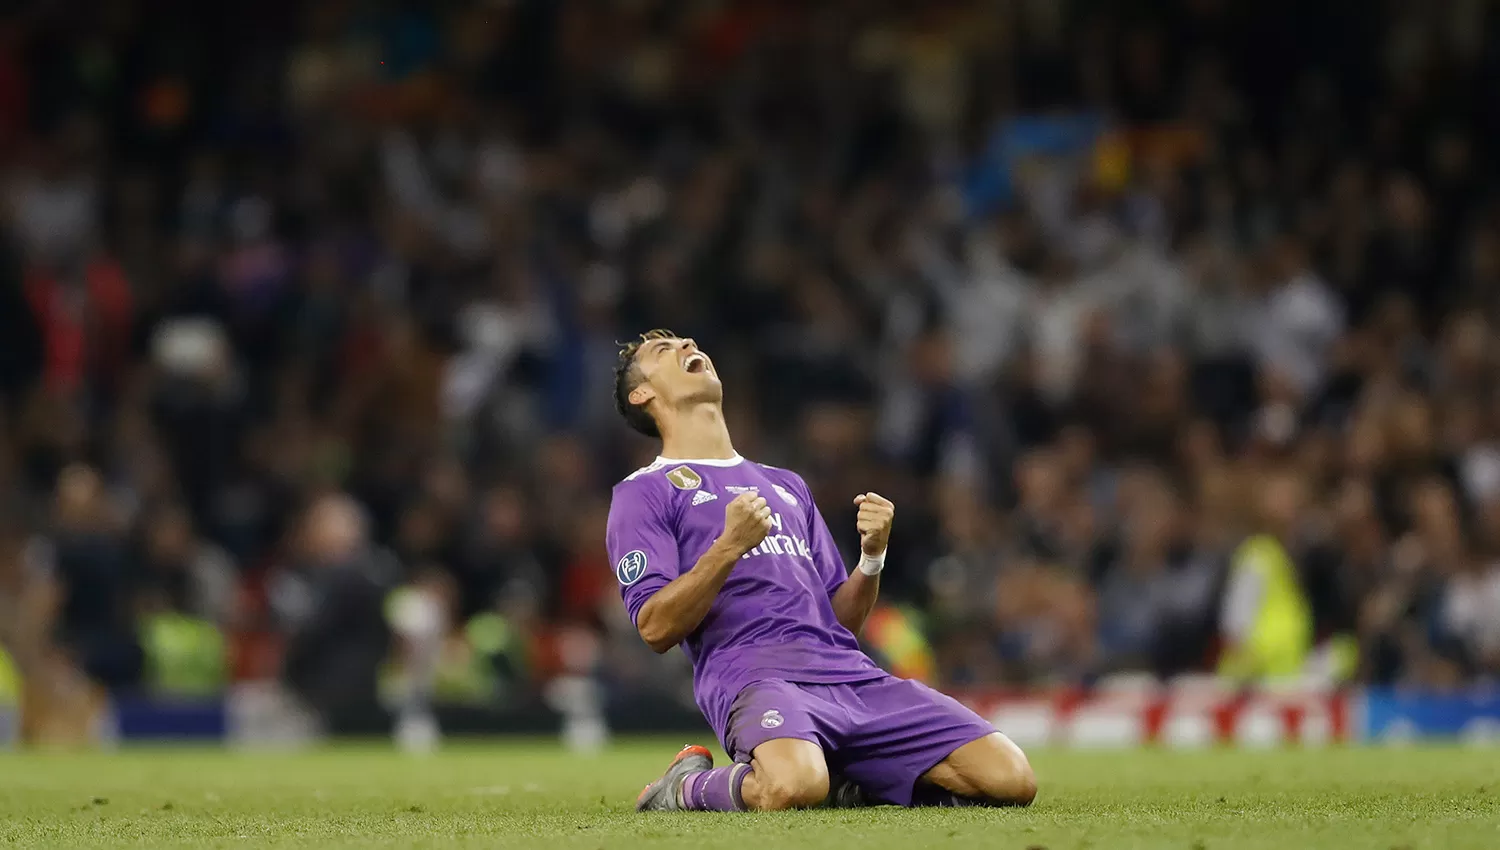 ¿Habrá sido éste el último partido de Cristiano Ronaldo con la camiseta del Real Madrid? es la pregunta de la encuesta del Twitter del club merengue.
ARCHIVO